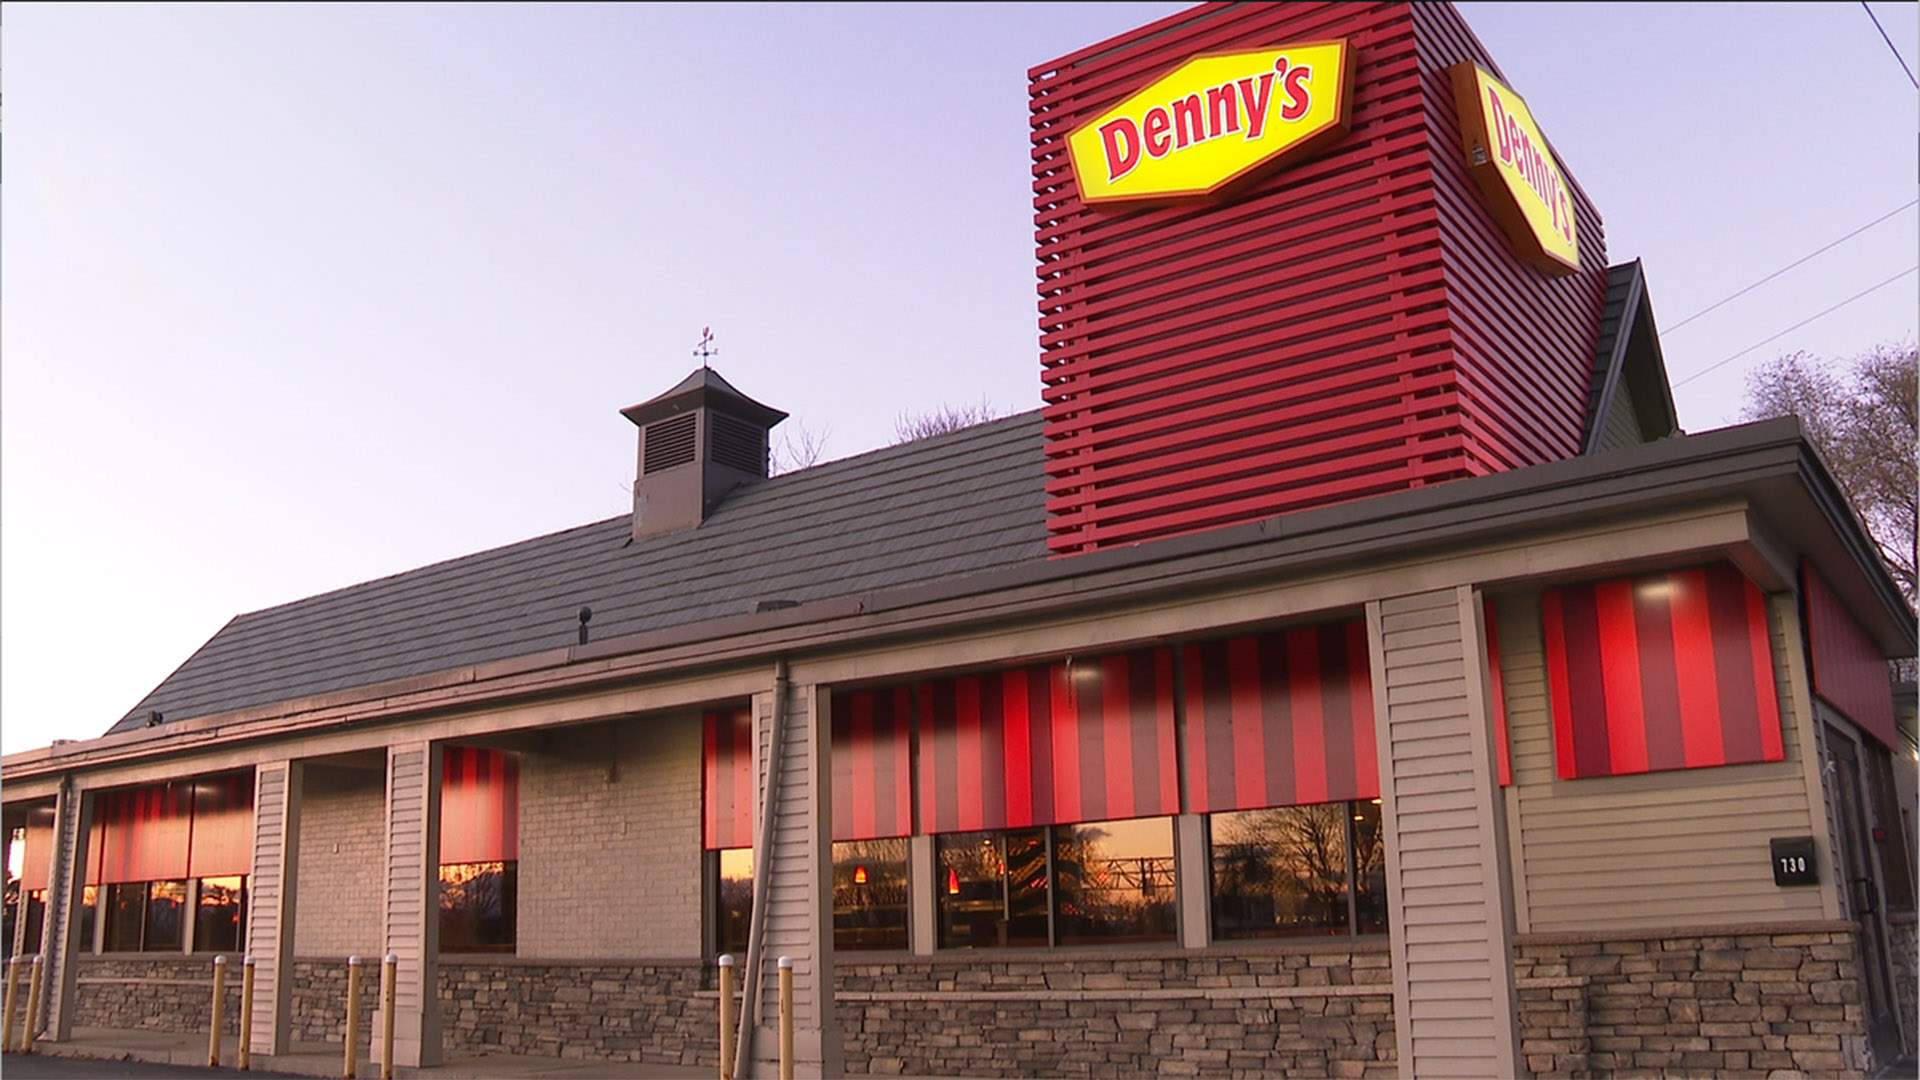 Denny's Menu, South Burlington, VT